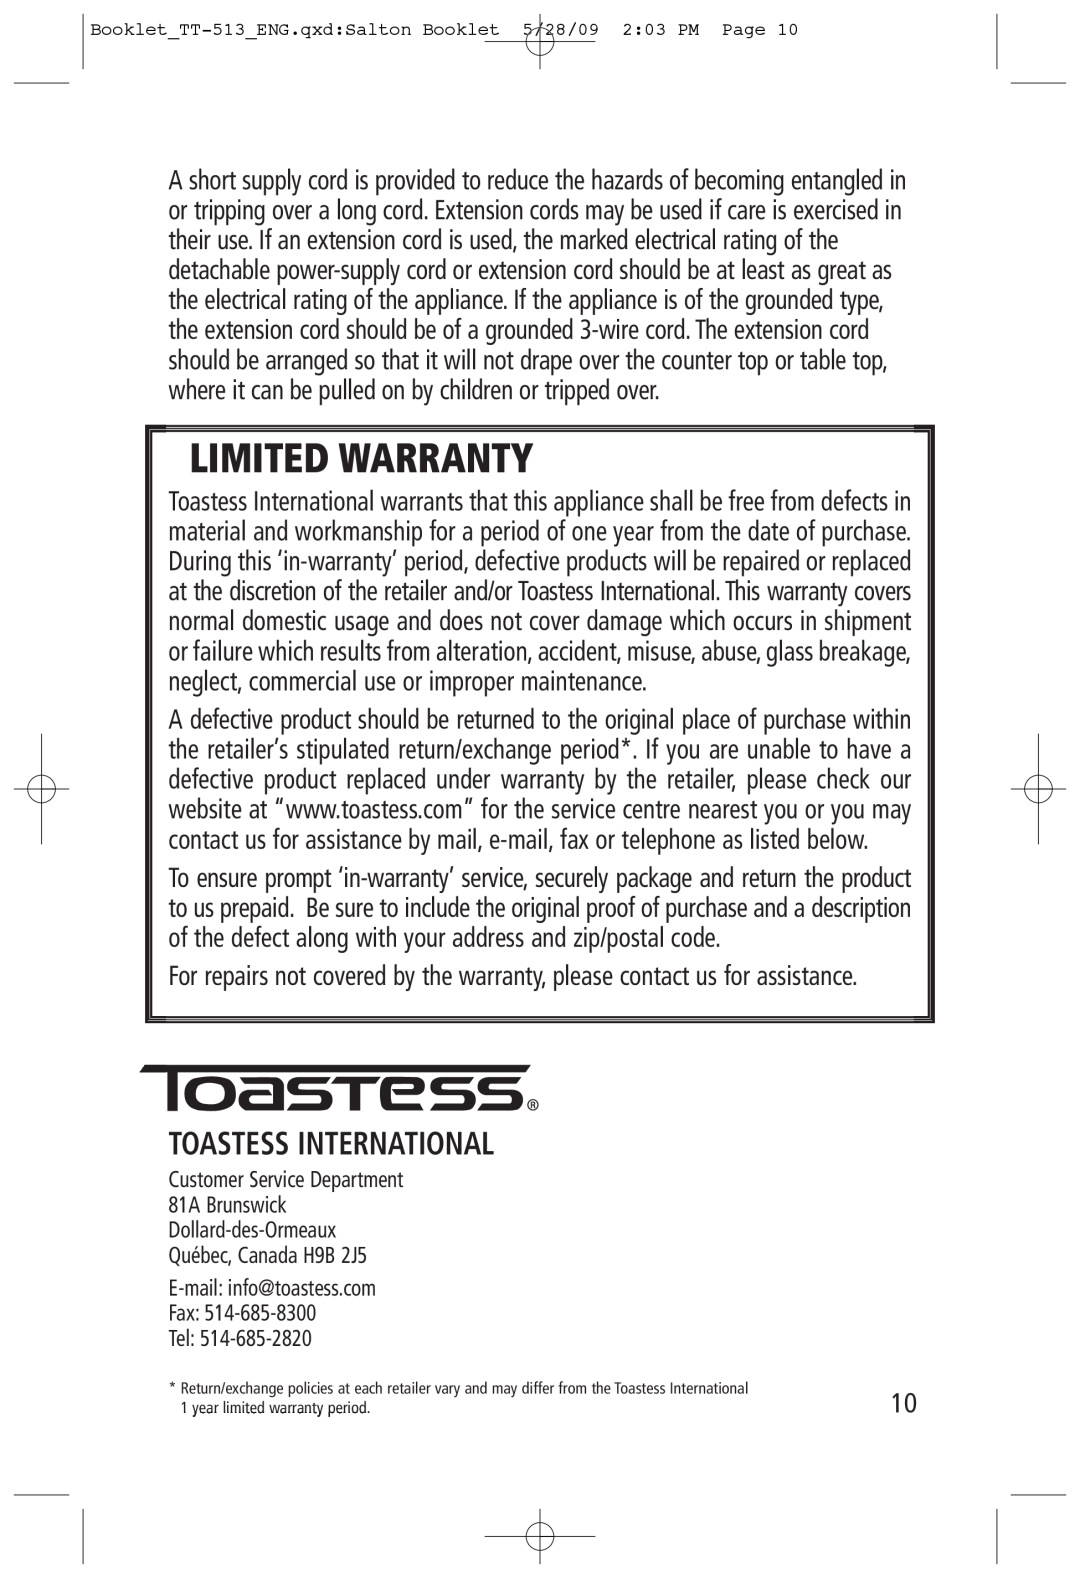 Toastess TT-513 manual Toastess International, Limited Warranty 